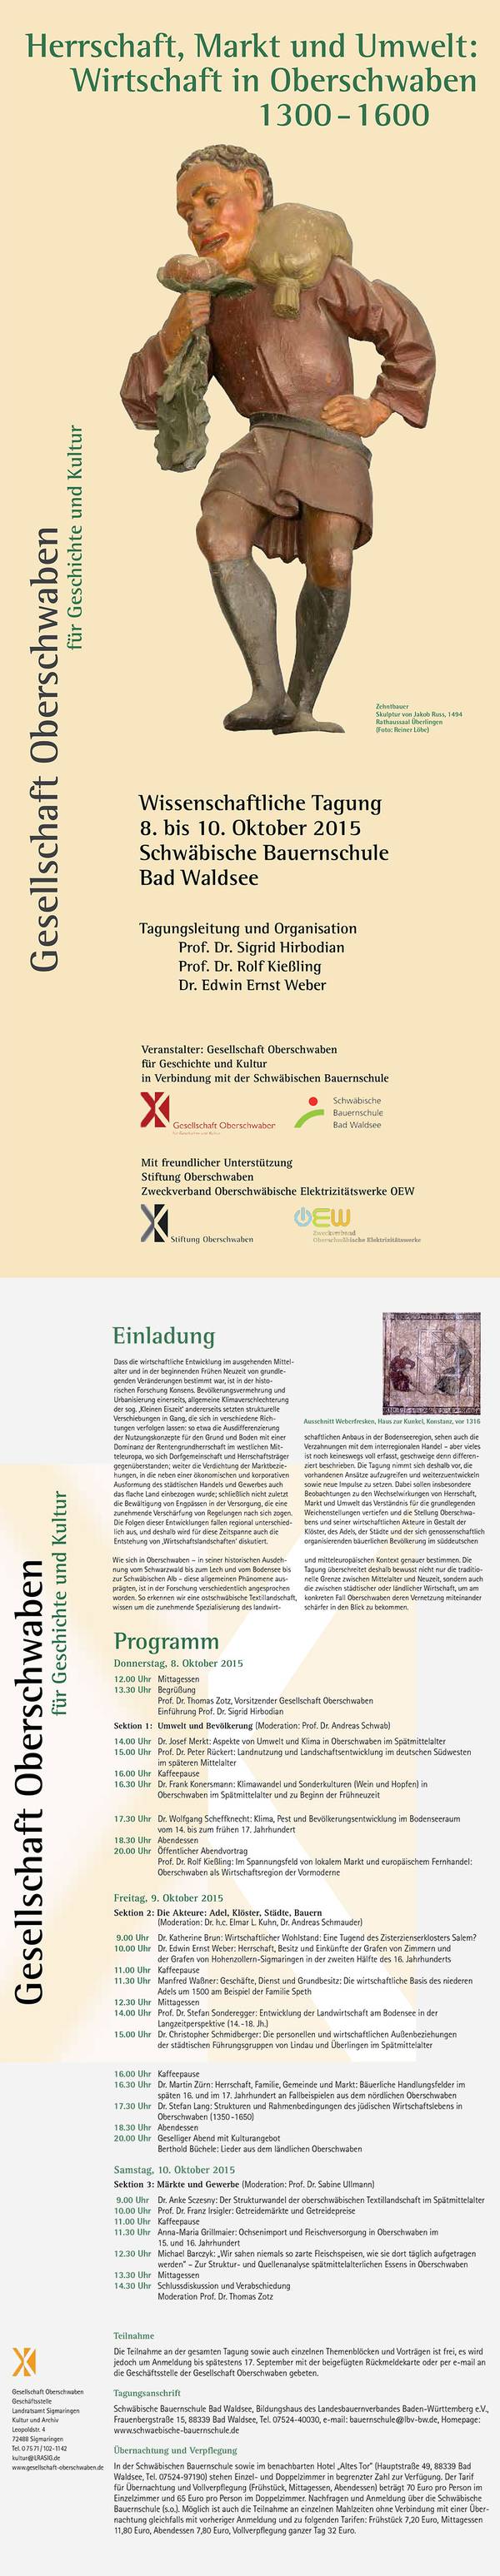 Wissenschaftliche Tagung Herrschaft, Markt und Umwelt - Wirtschaft in Oberschwaben 1300-1600